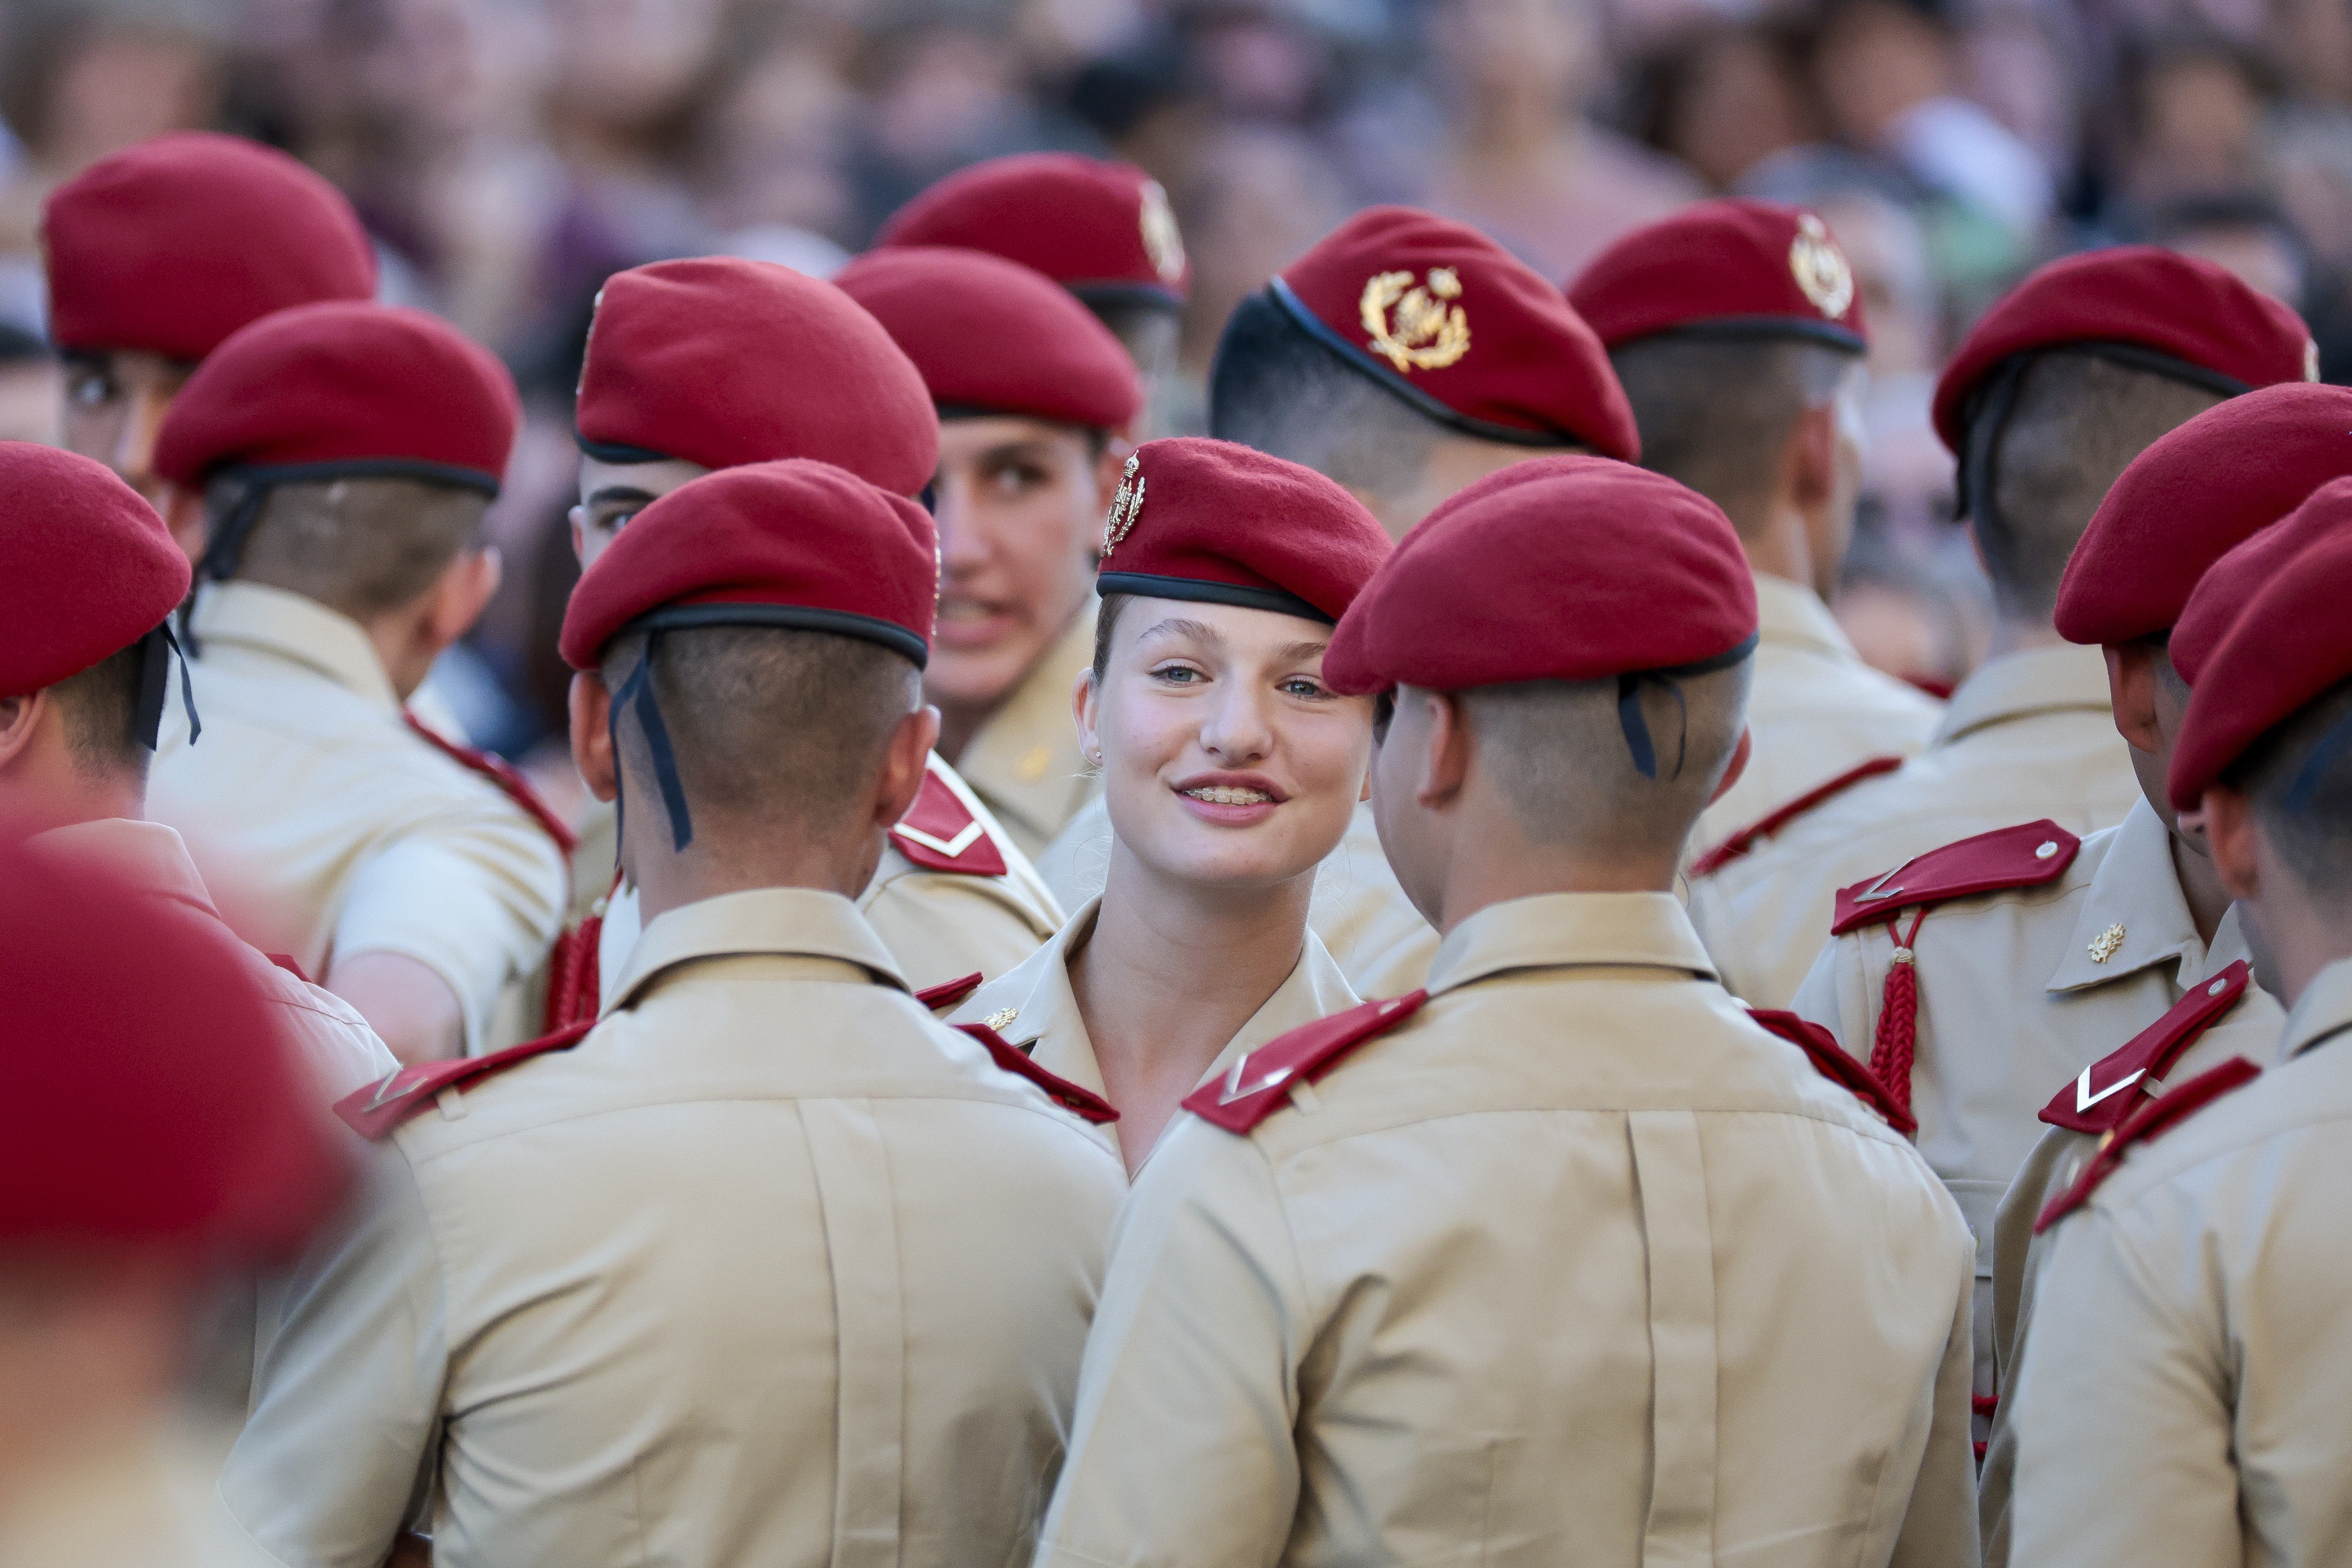 Un cadete filtra las fiestas nocturnas de Leonor en Zaragoza con soldados mayores